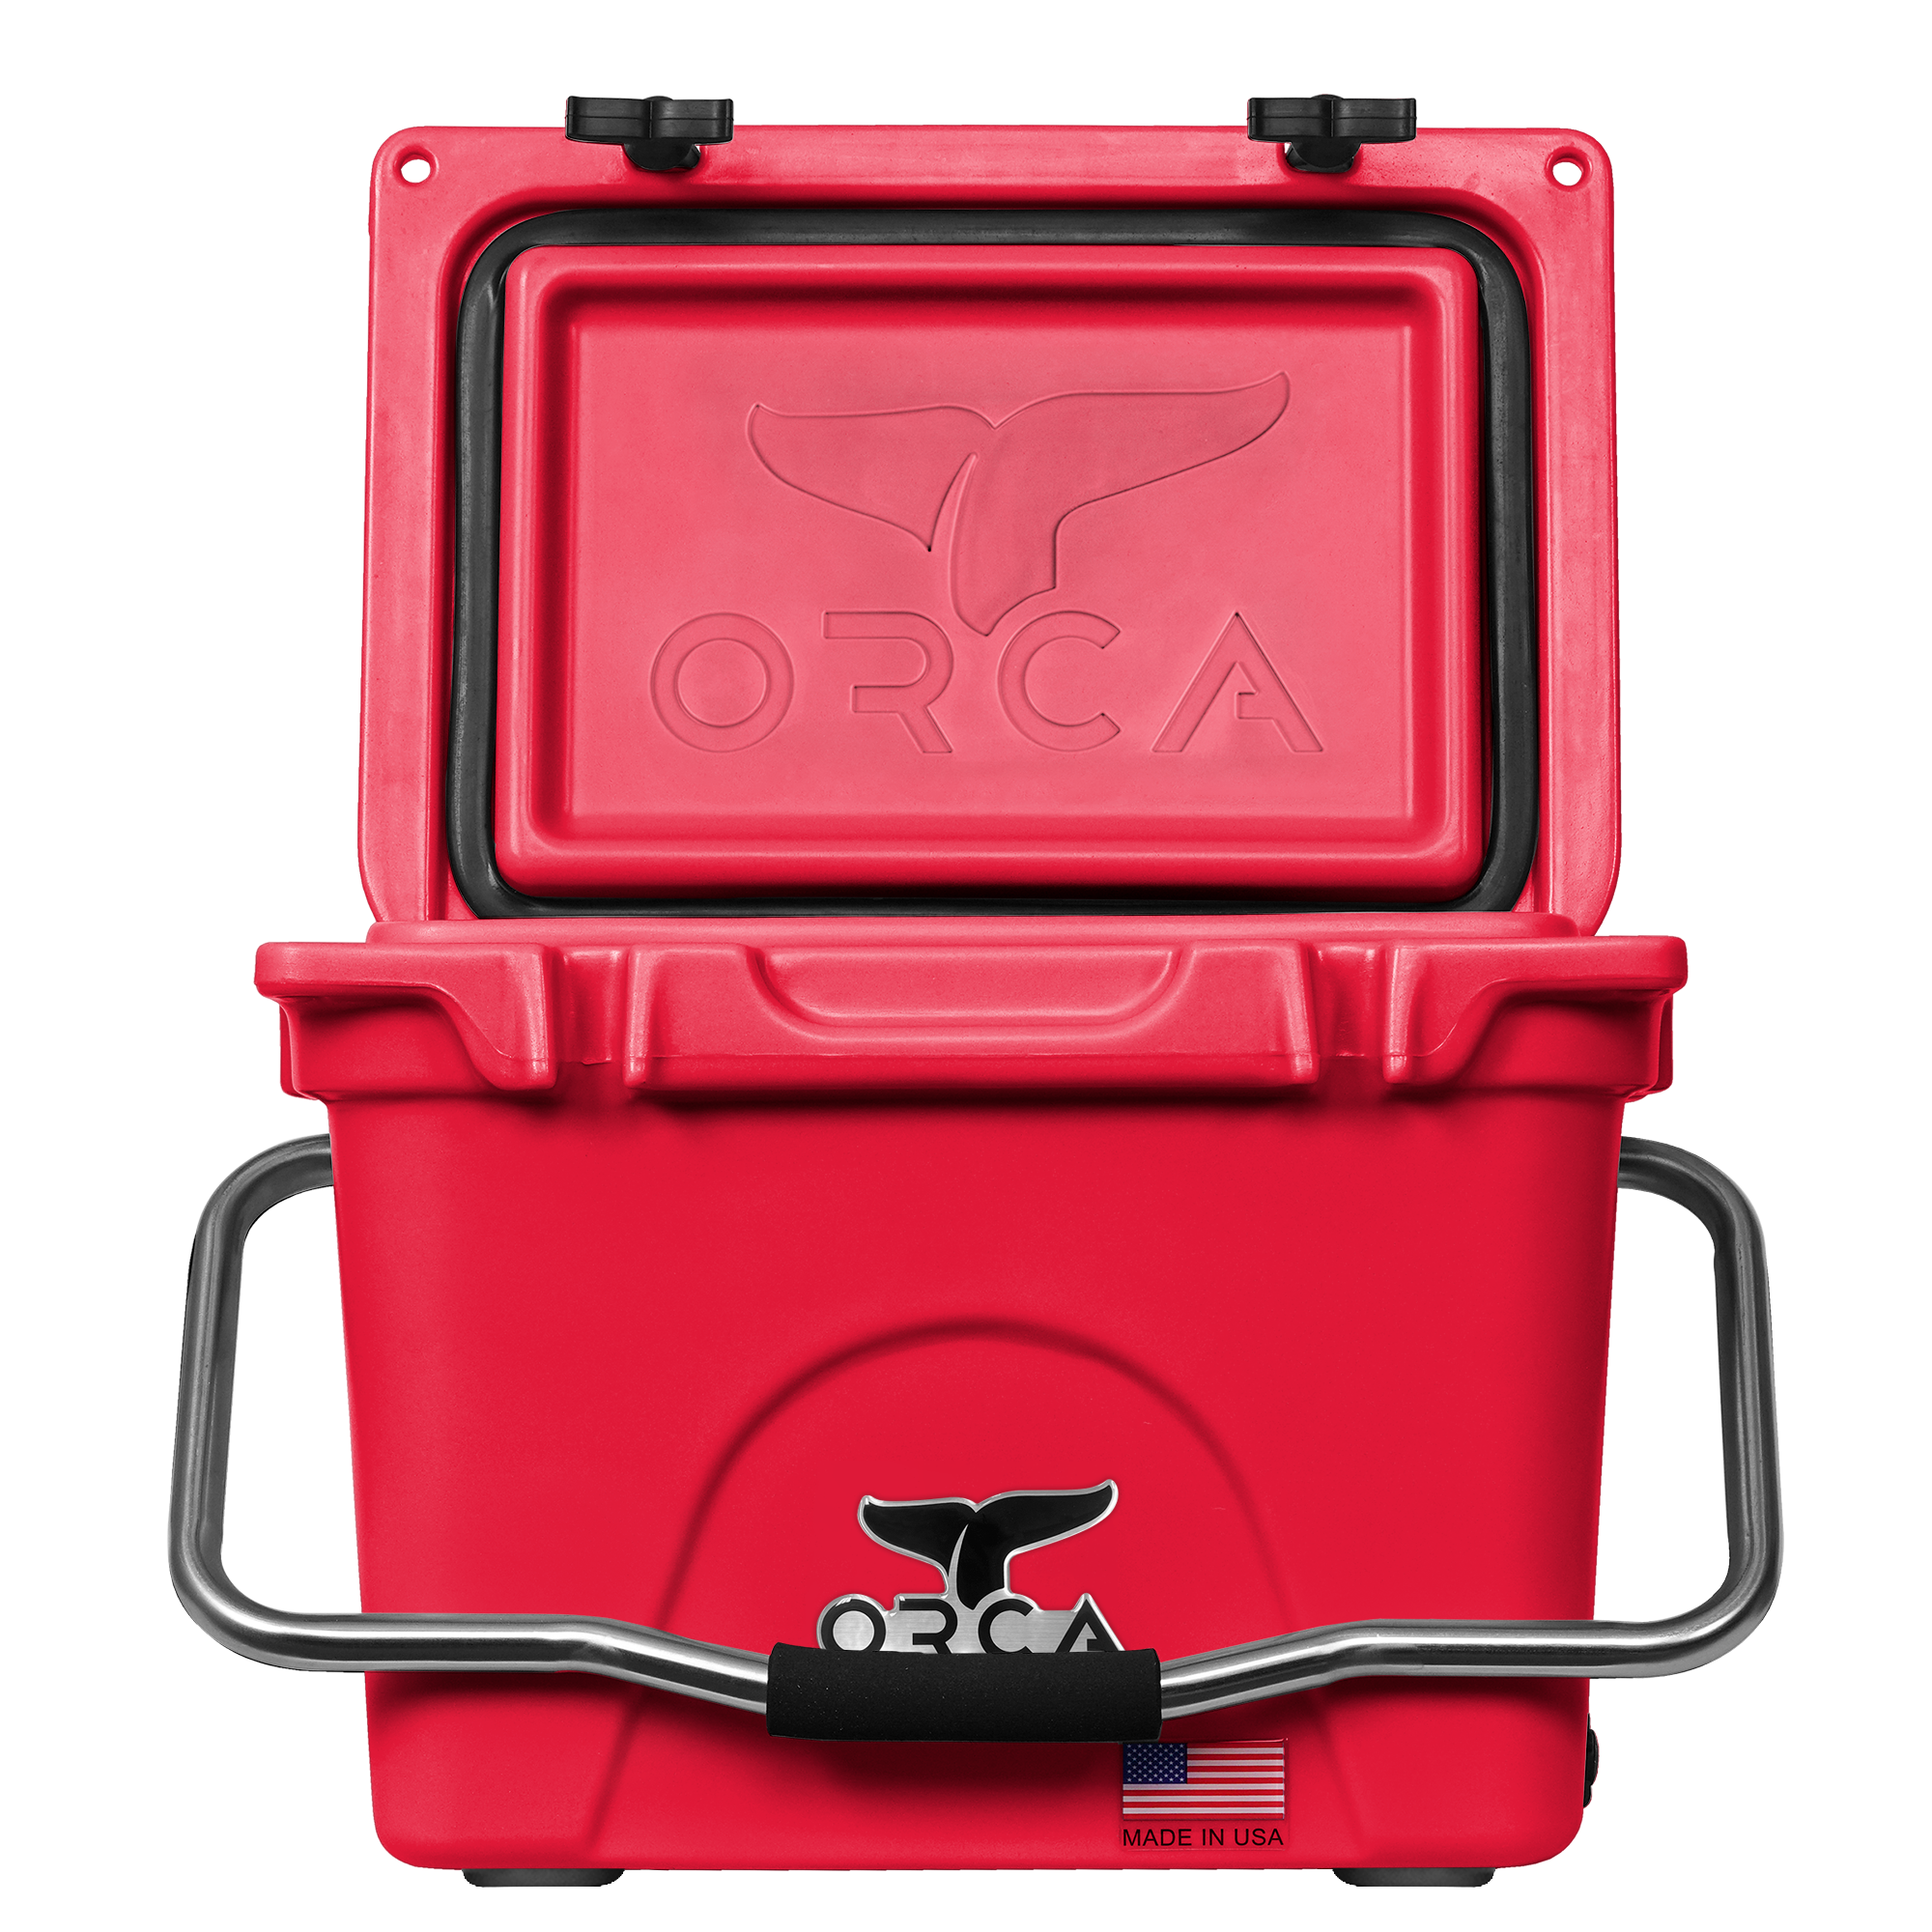 20 Quart Cooler, Red, Open